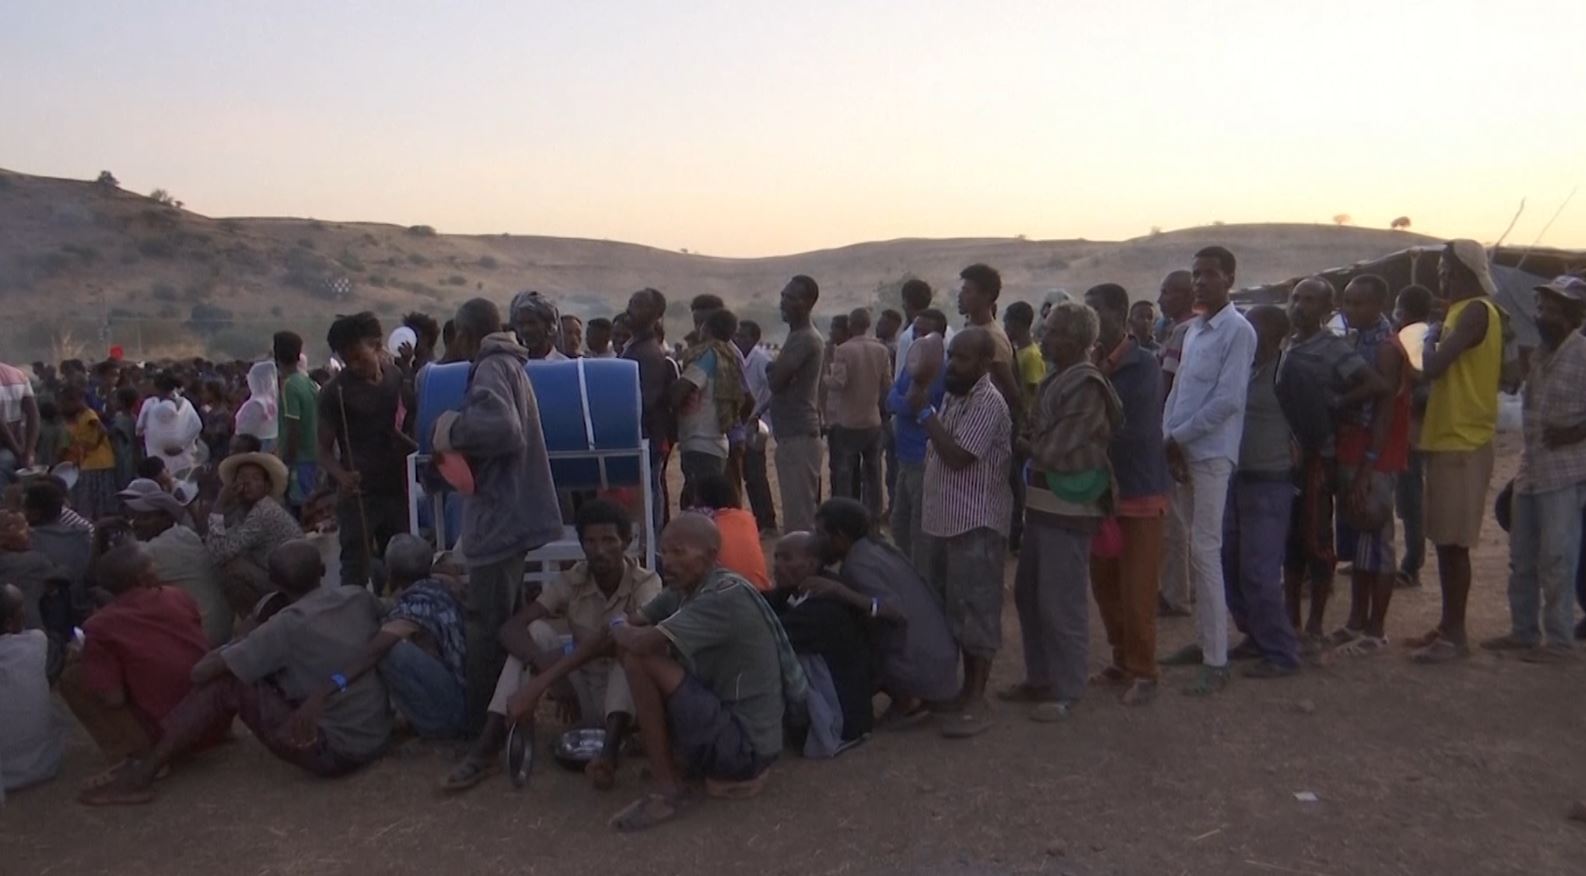 کووڈ وبا کے دوران سوڈانی کیمپ میں ایتھوپیائی پناہ گزیروں کی تعداد قابل تشویش